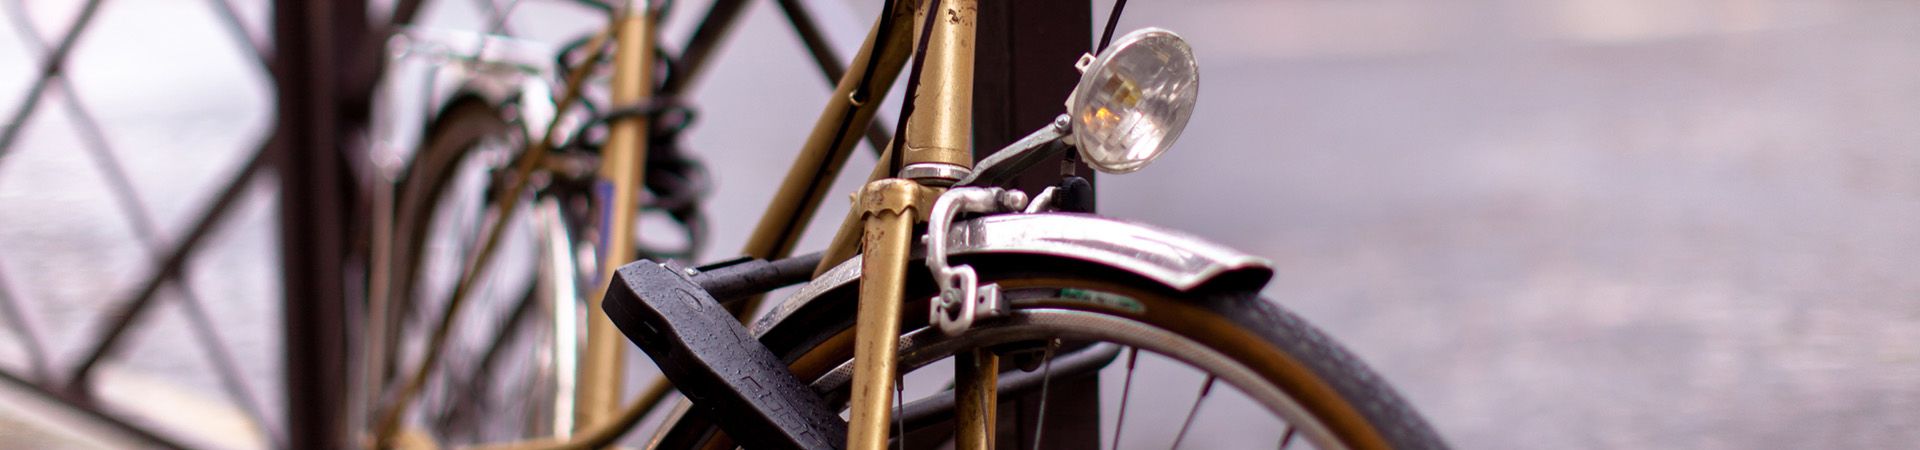 Zabezpieczenie roweru – profesjonalne zapięcie do roweru uchroni twój jednoślad przed kradzieżą.